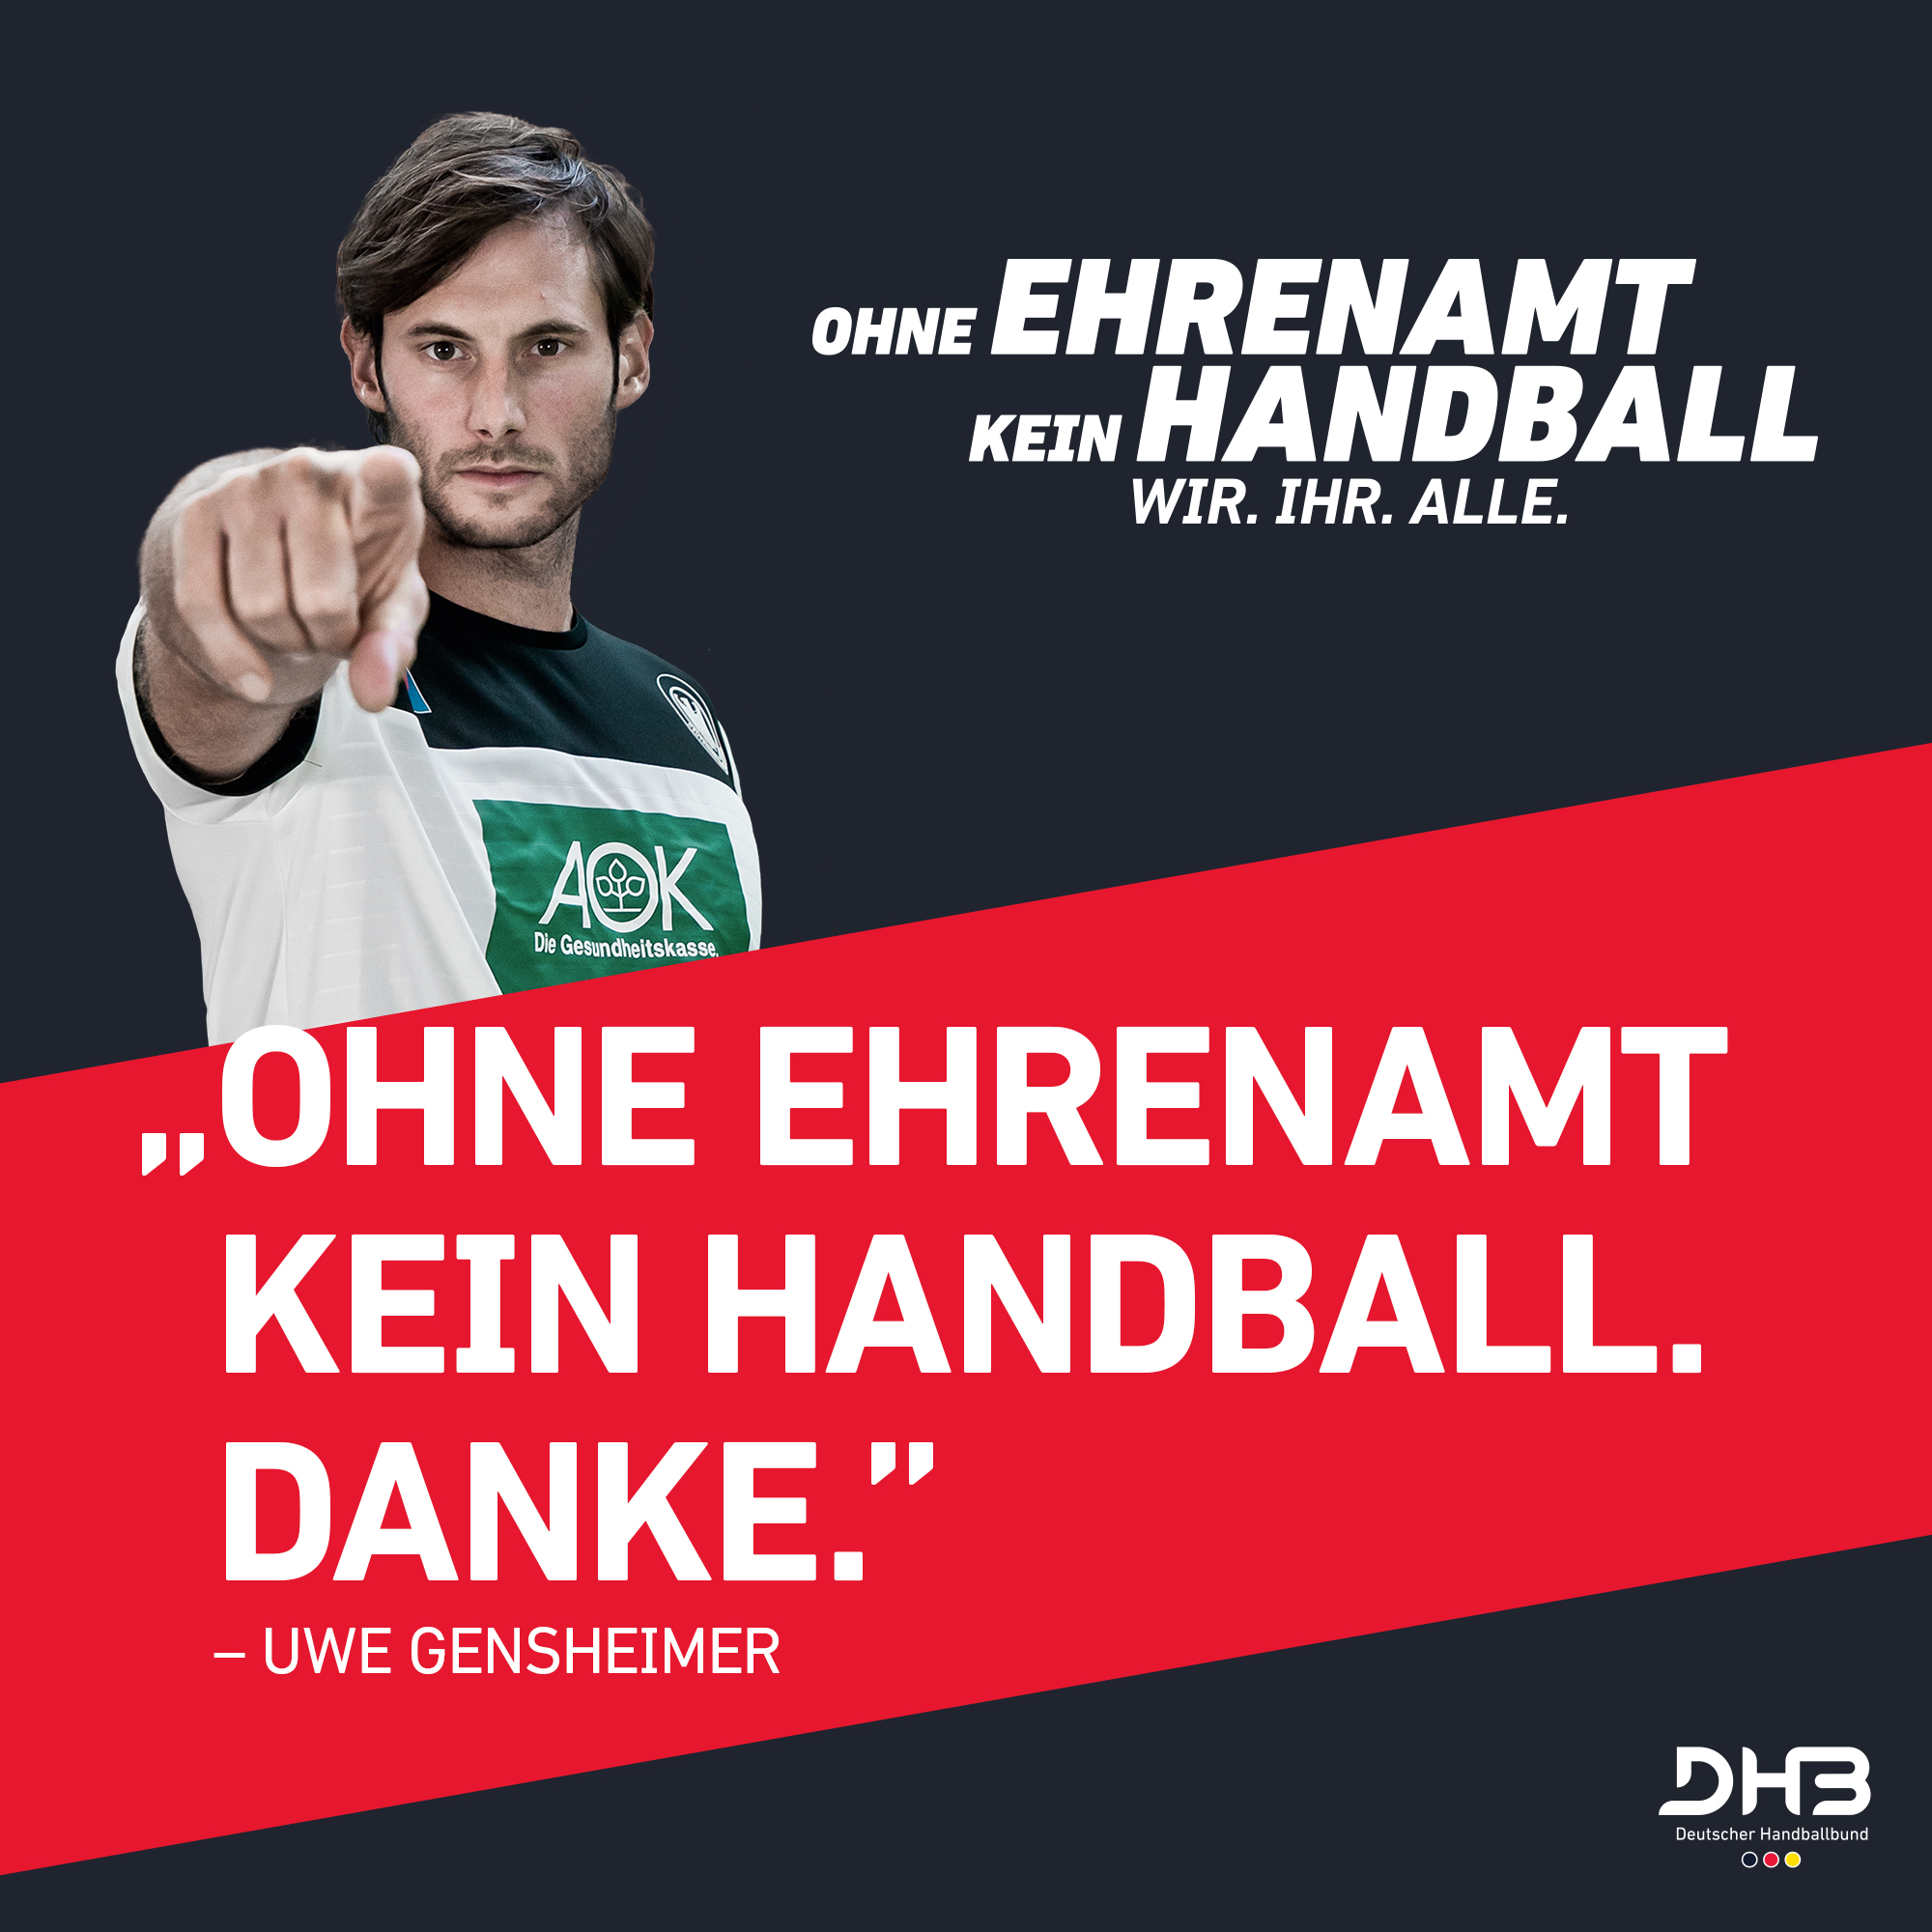 Ohne_Ehrenamt_kein_Handball_(Gensheimer)_2000x2000.jpg